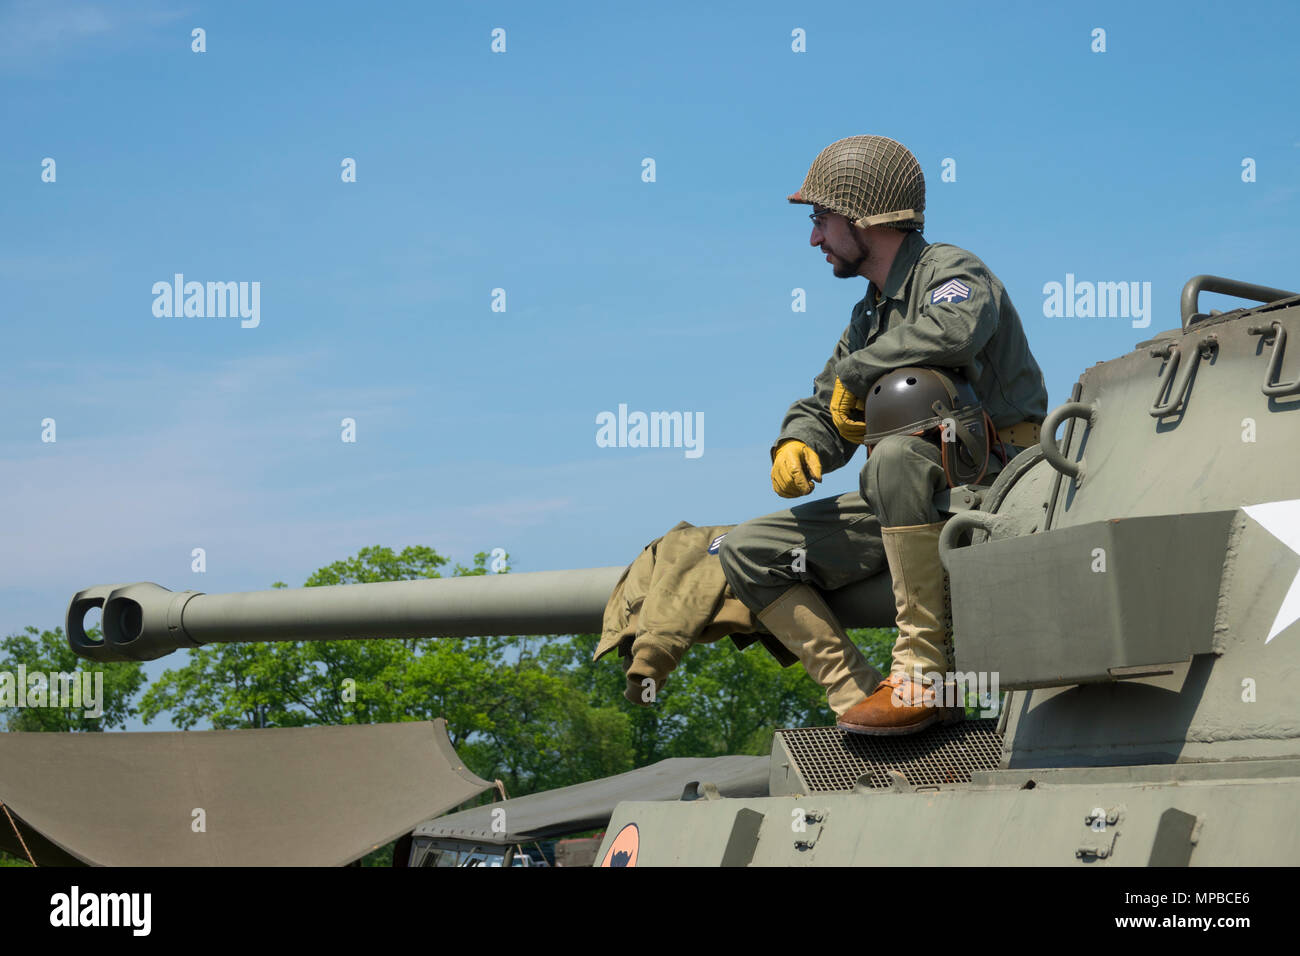 El ejército de los EE.UU. Patrimonio y un Centro de Educación de la segunda guerra mundial re-enactor sobre un tanque destructor M18 Hellcat en Carlisle, Pennsylvania Foto de stock